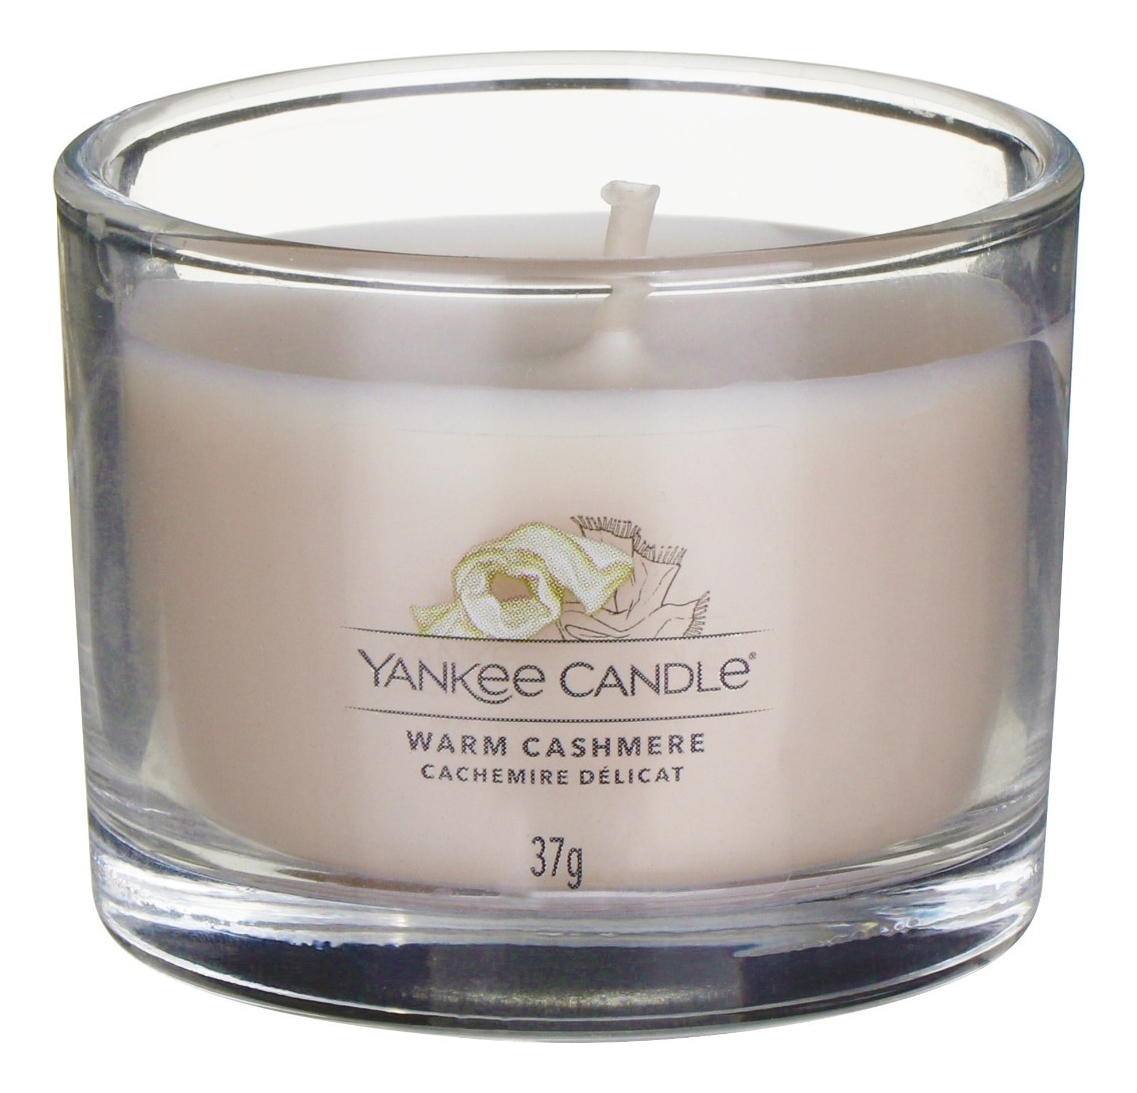 Купить Ароматическая свеча Warm Cashmere: Свеча 37г, Yankee Candle